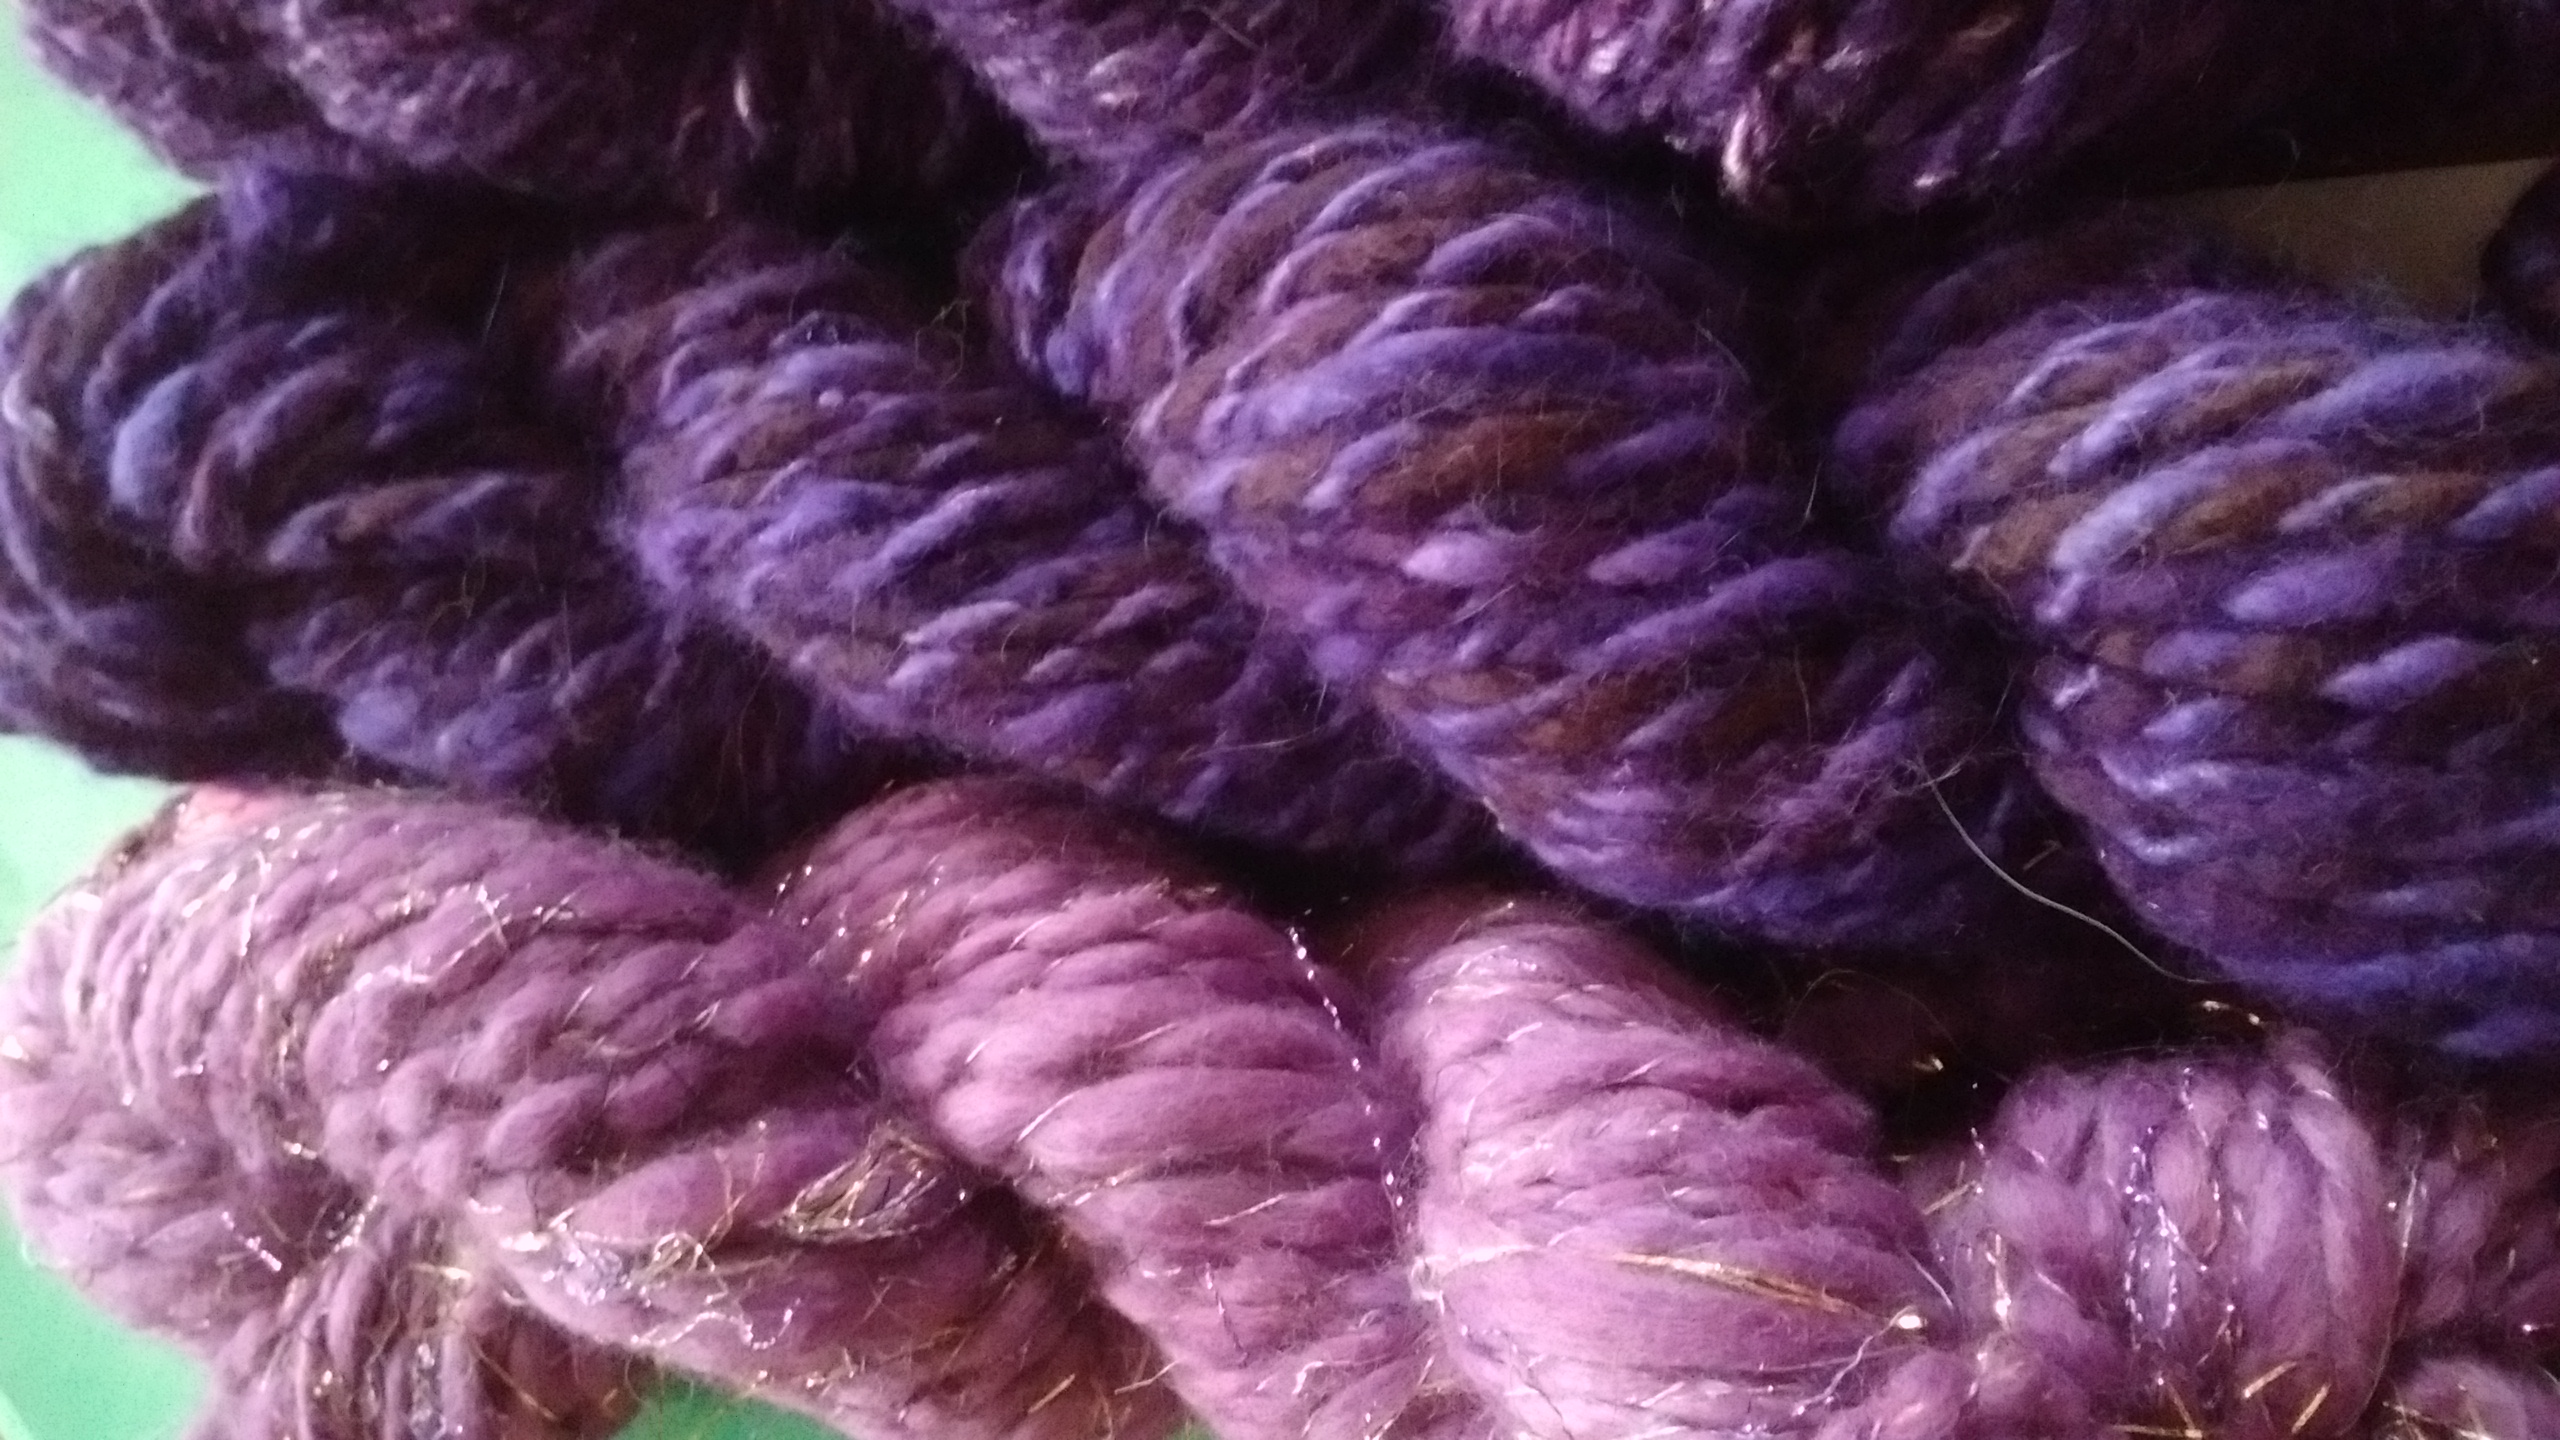 Handpun hand dyed angora/ merino yarn, bulky weight